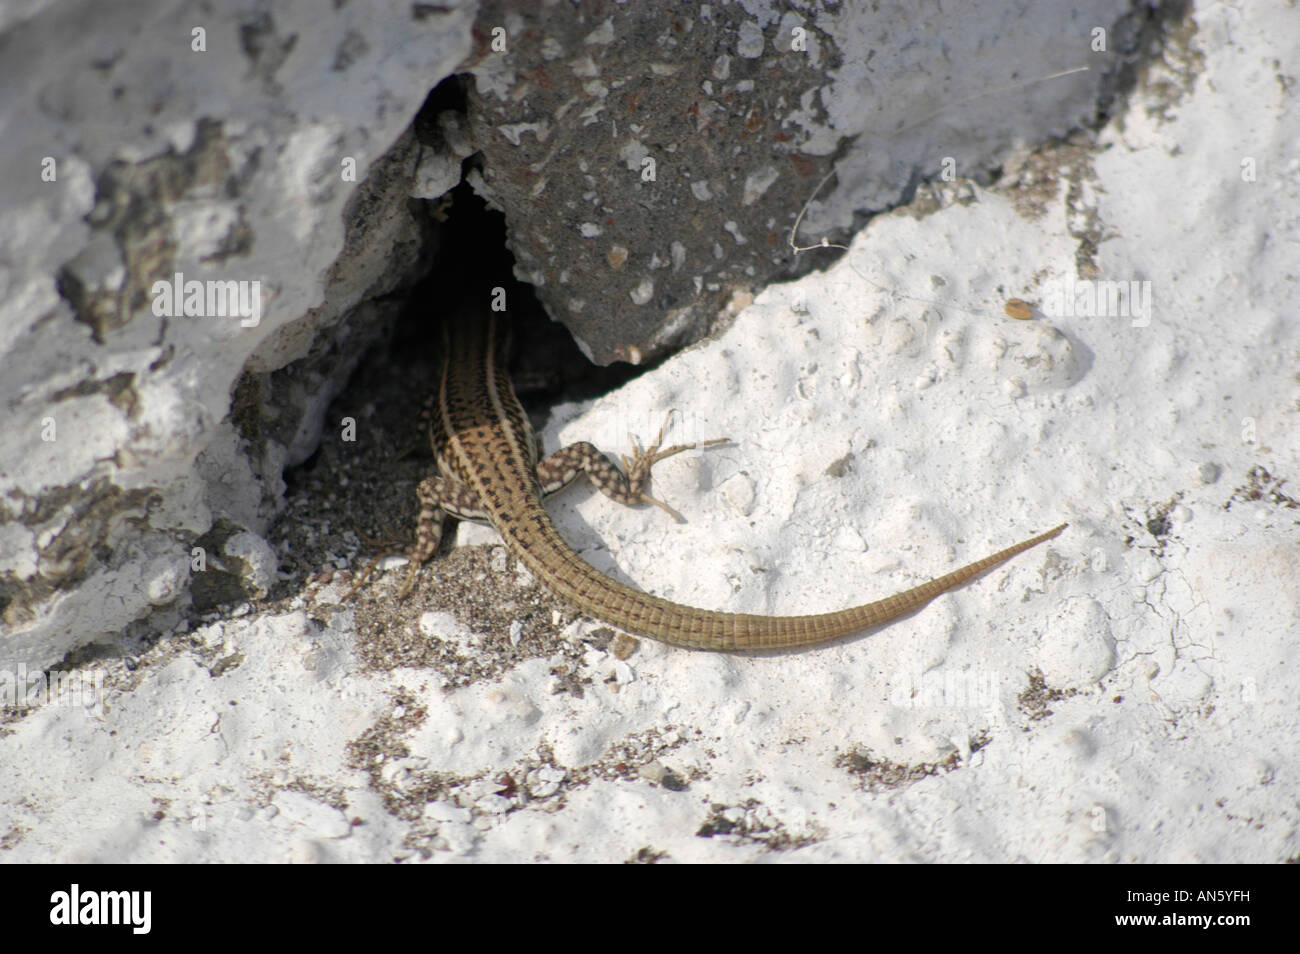 Lizard is sunbathing on white painted ground, greece. Eidechse sonnt sich auf weiss gekalktem Boden, Griechenland. Stock Photo